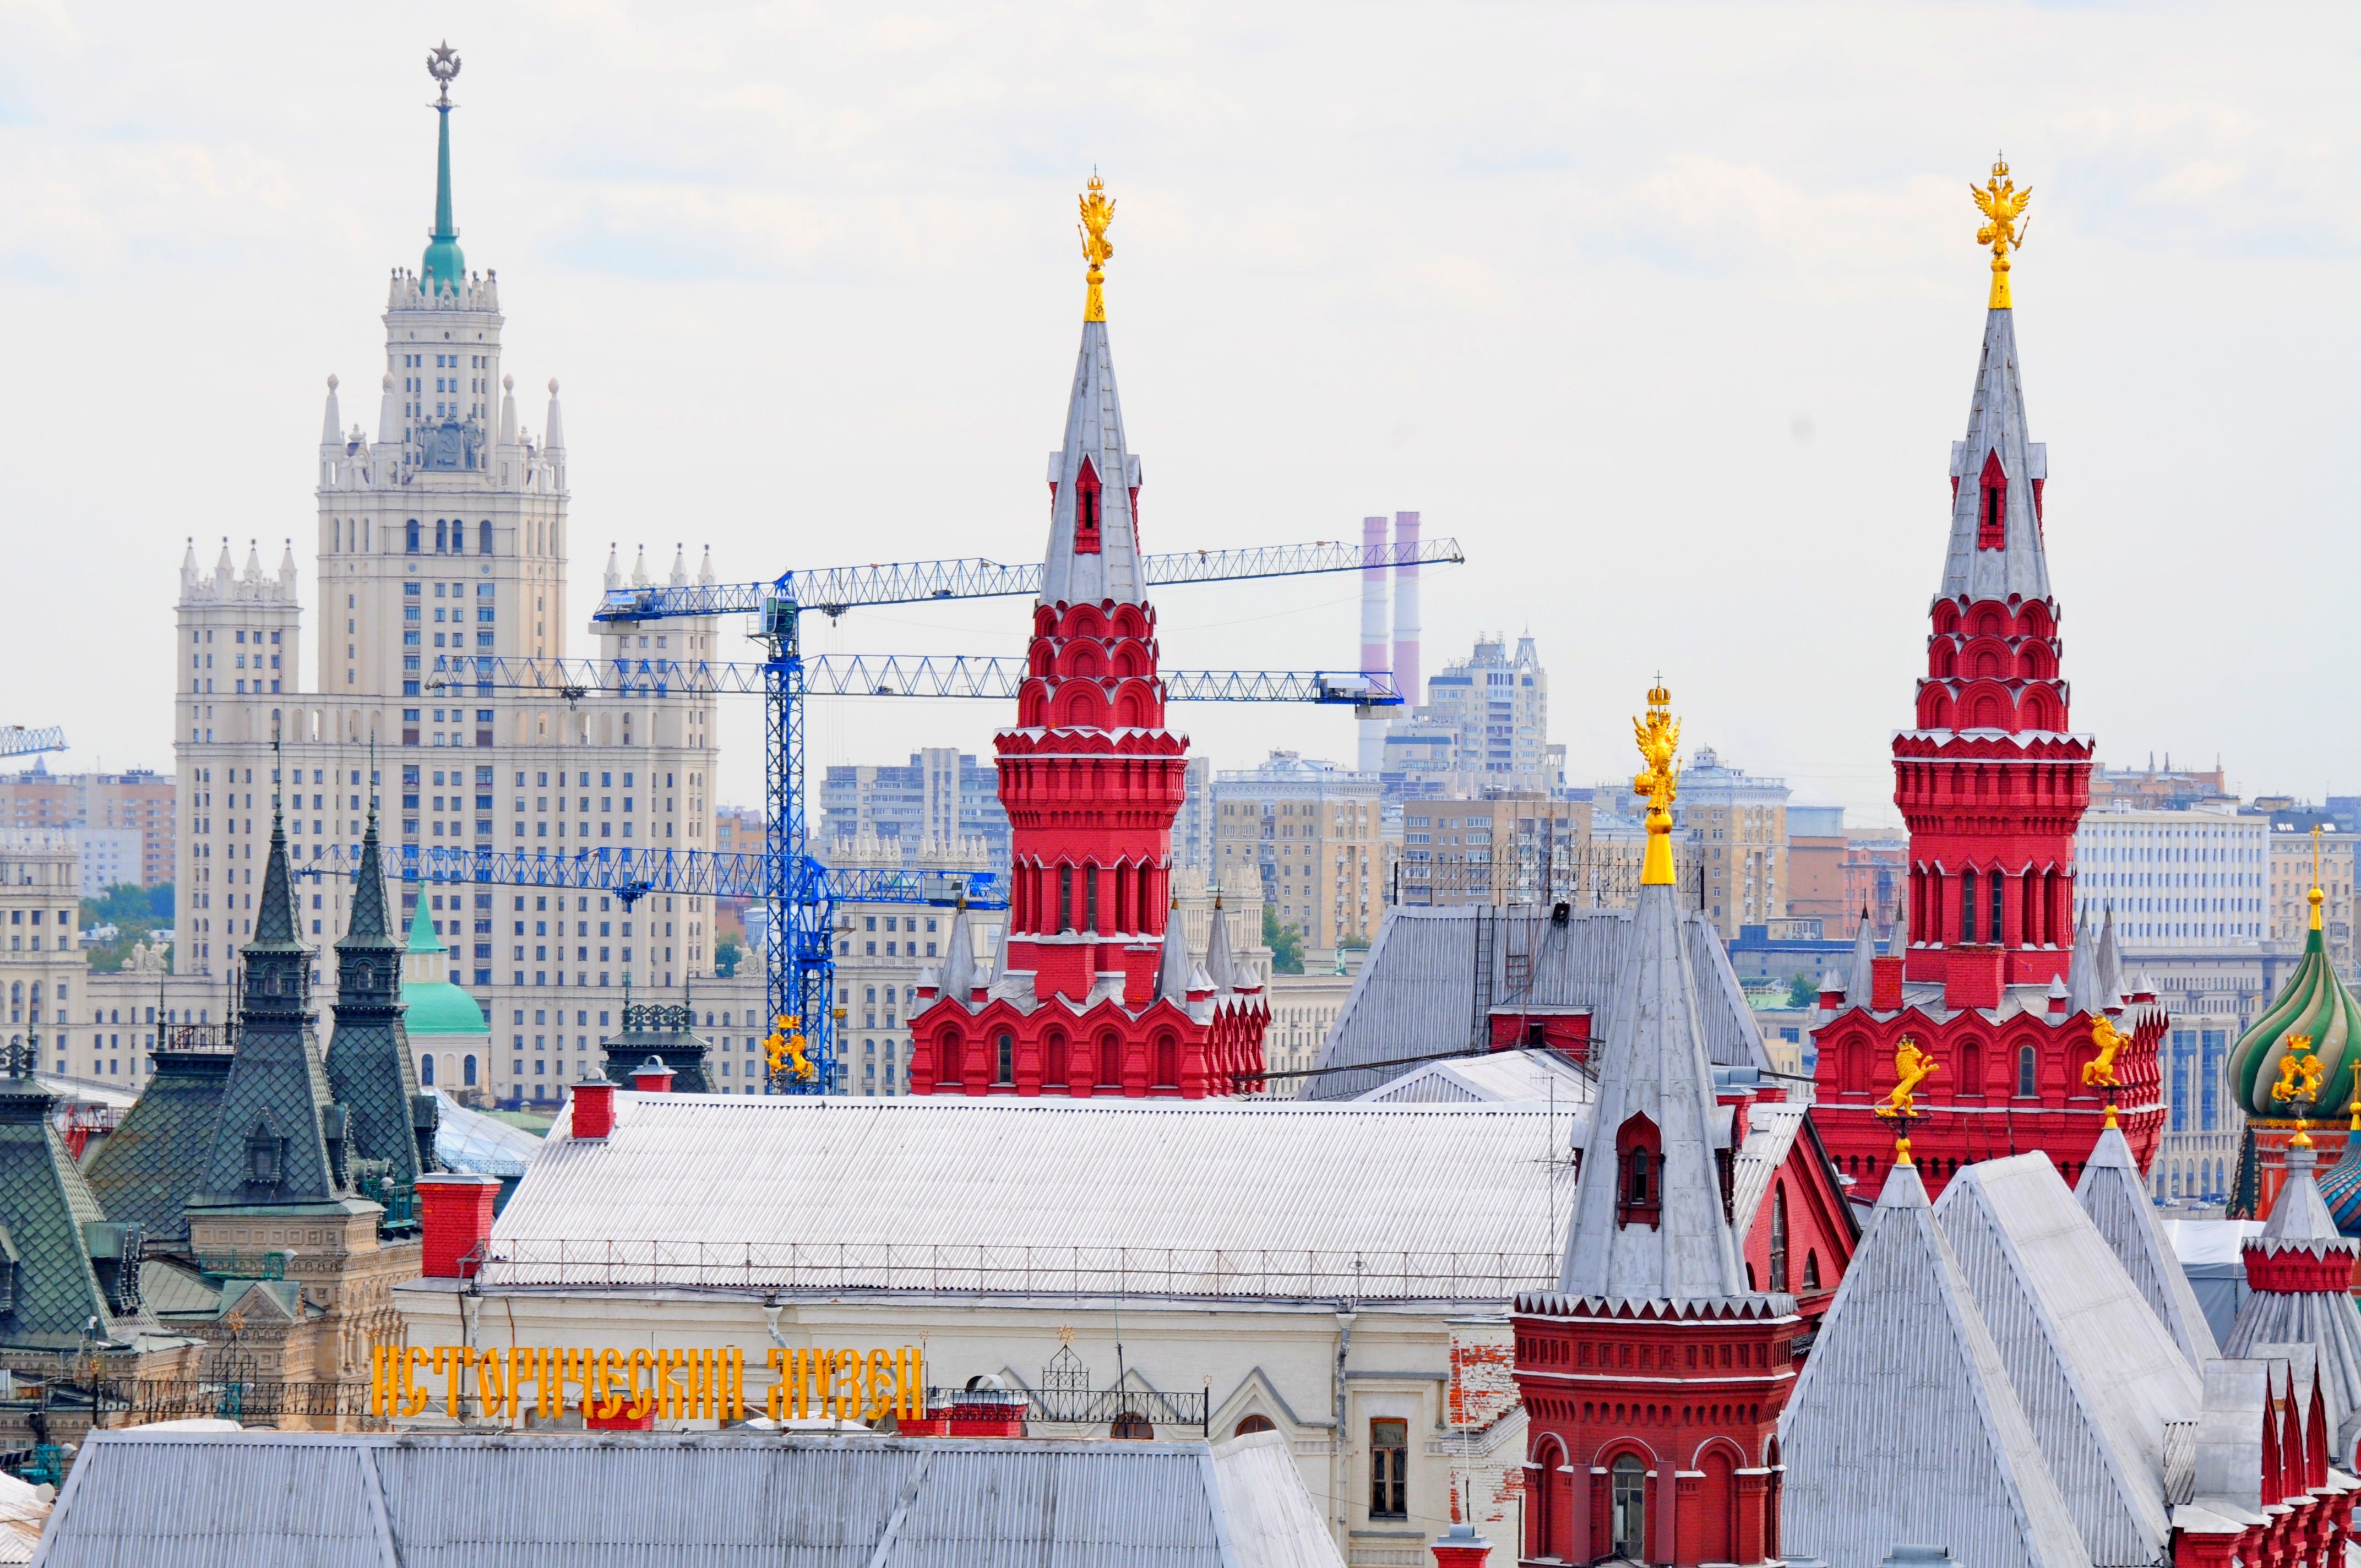 Гиды назвали любимые достопримечательности иностранцев в Москве